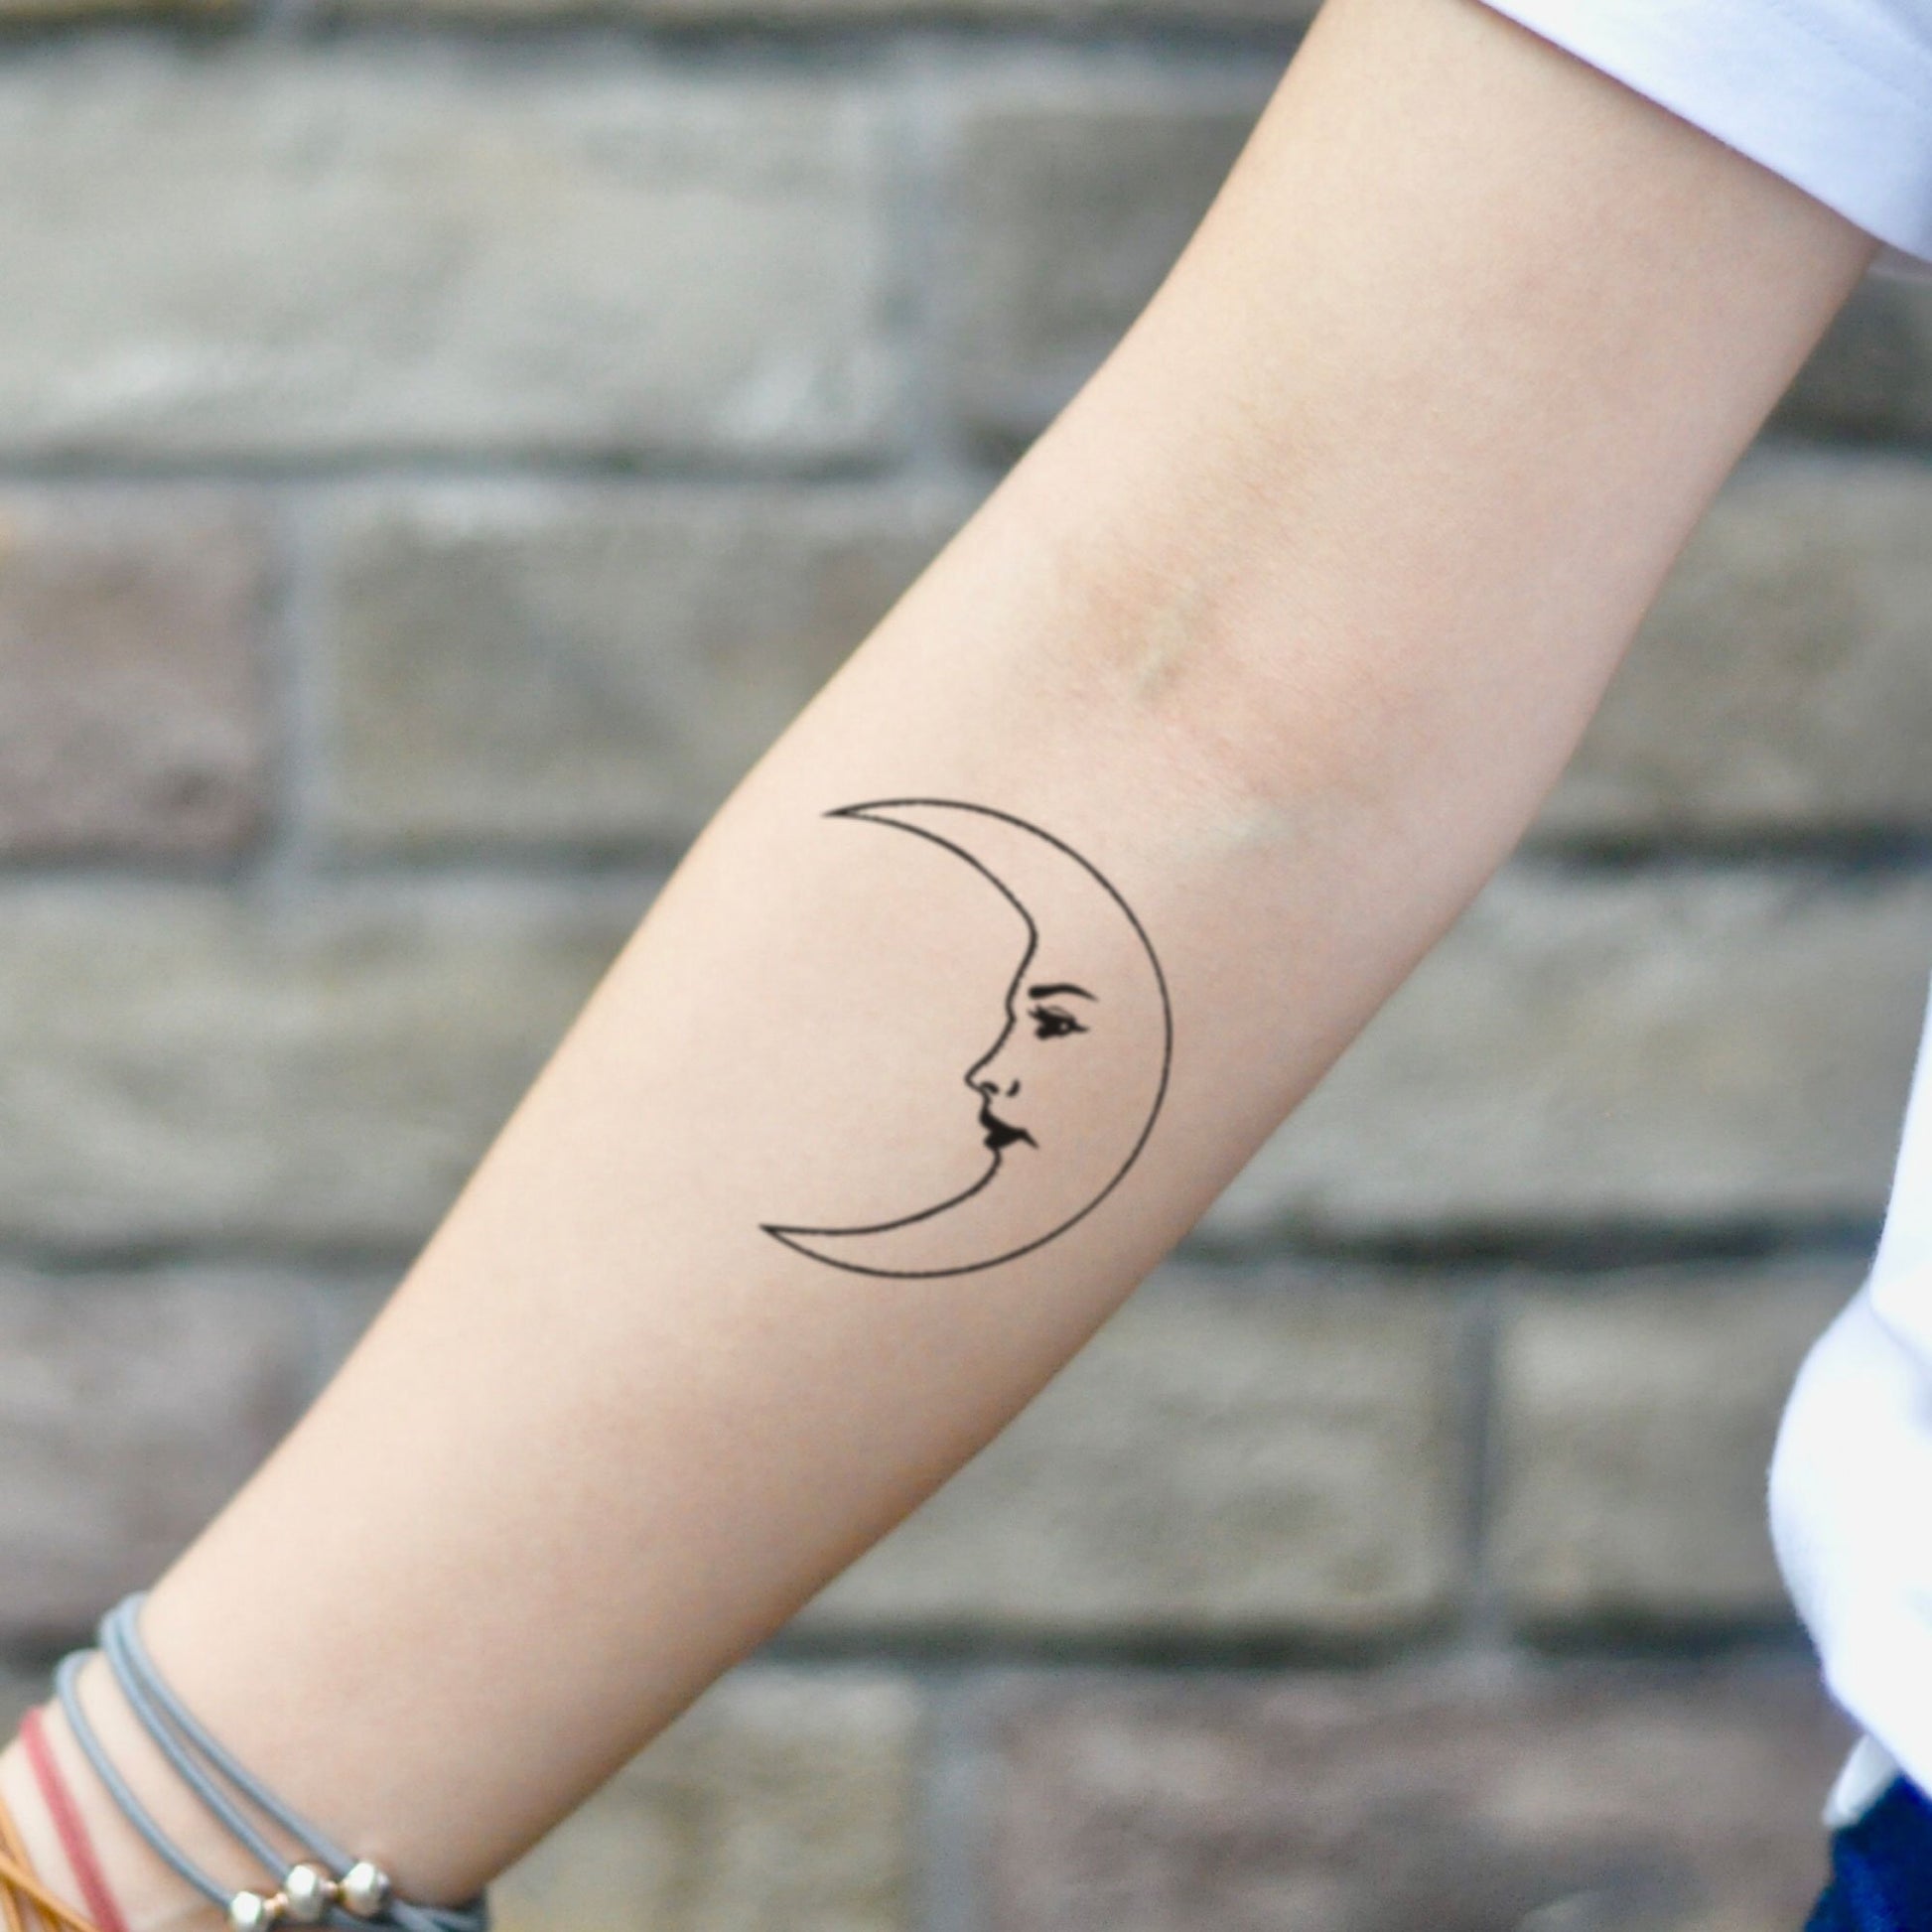 fake small la luna nature temporary tattoo sticker design idea on inner arm